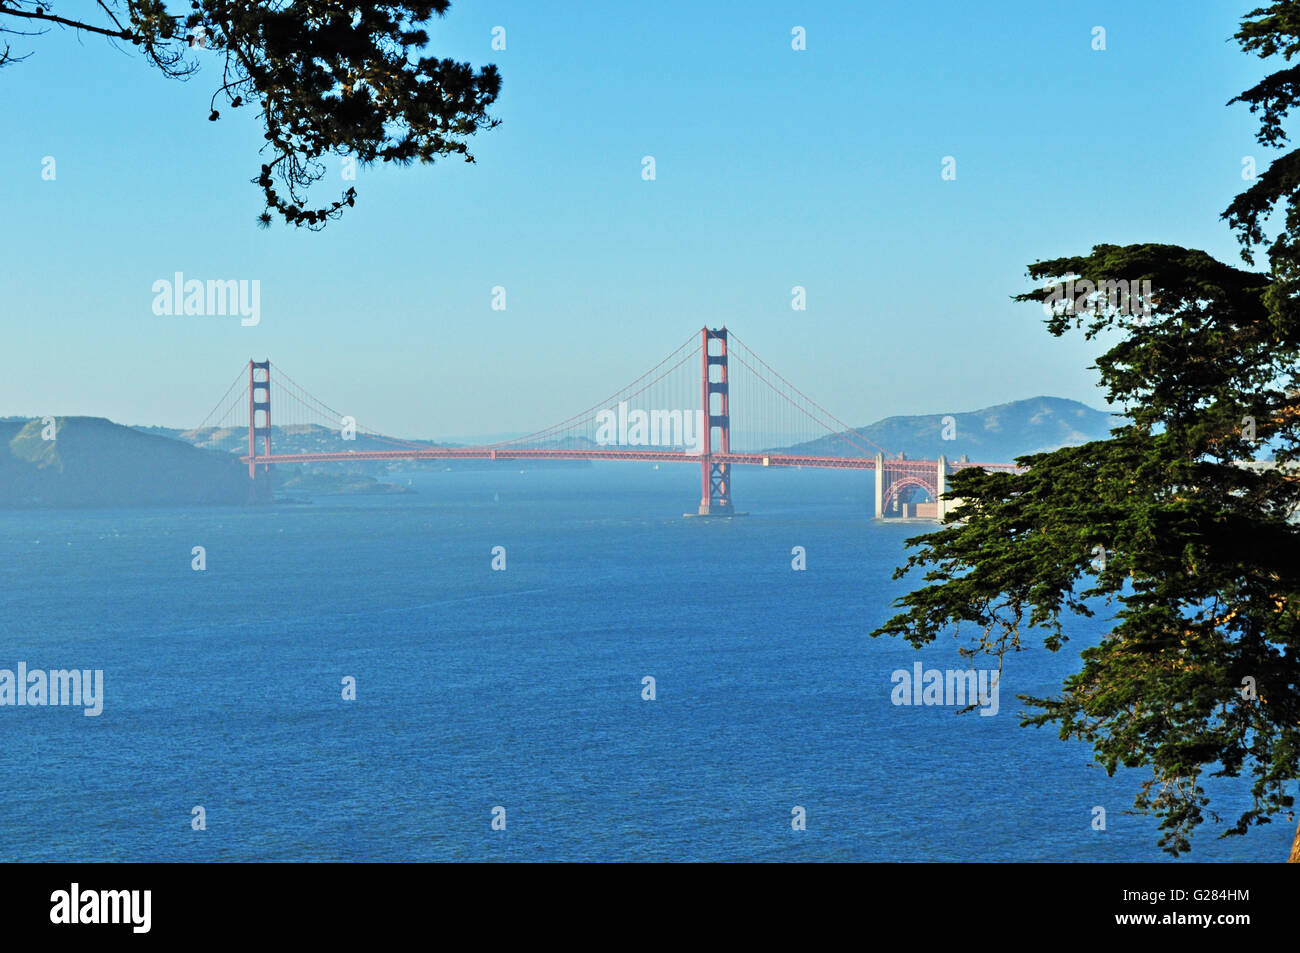 San Francisco: vista panorámica del Golden Gate Bridge, inaugurado en 1936, el símbolo de la ciudad de San Francisco en el mundo Foto de stock